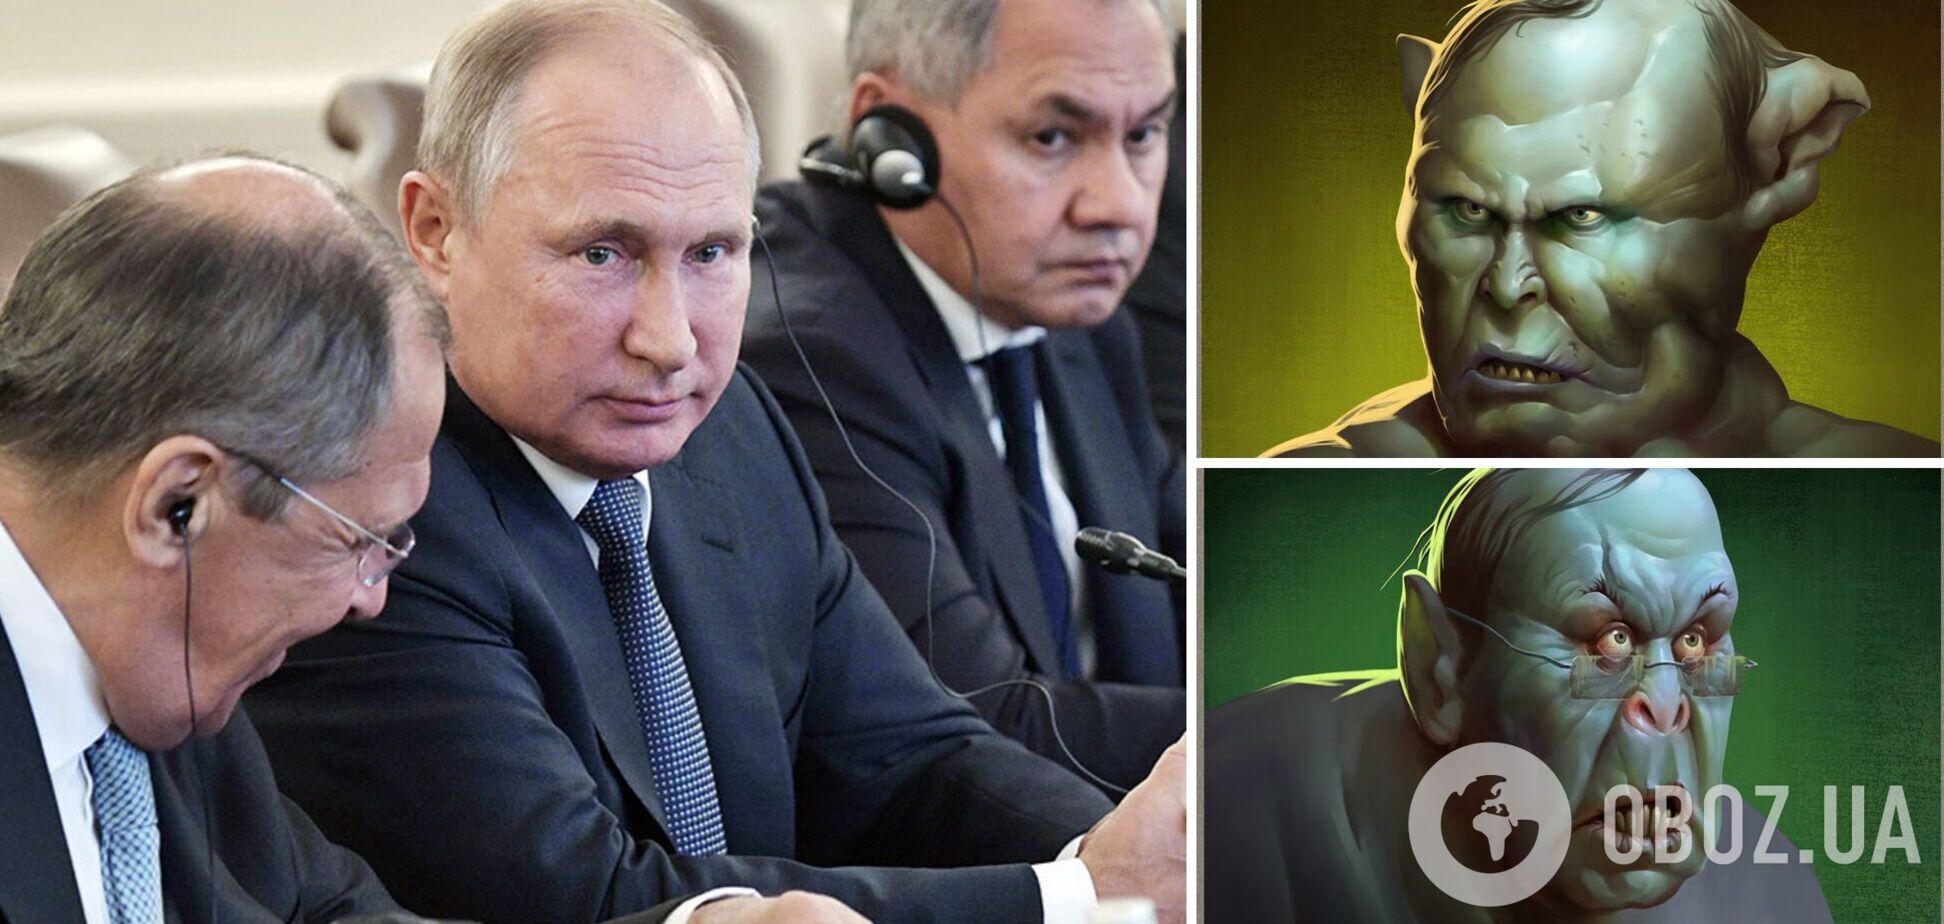 Путіна, Шойгу і Лаврова зобразили 'орками' з 'Володаря перснів'. Фото